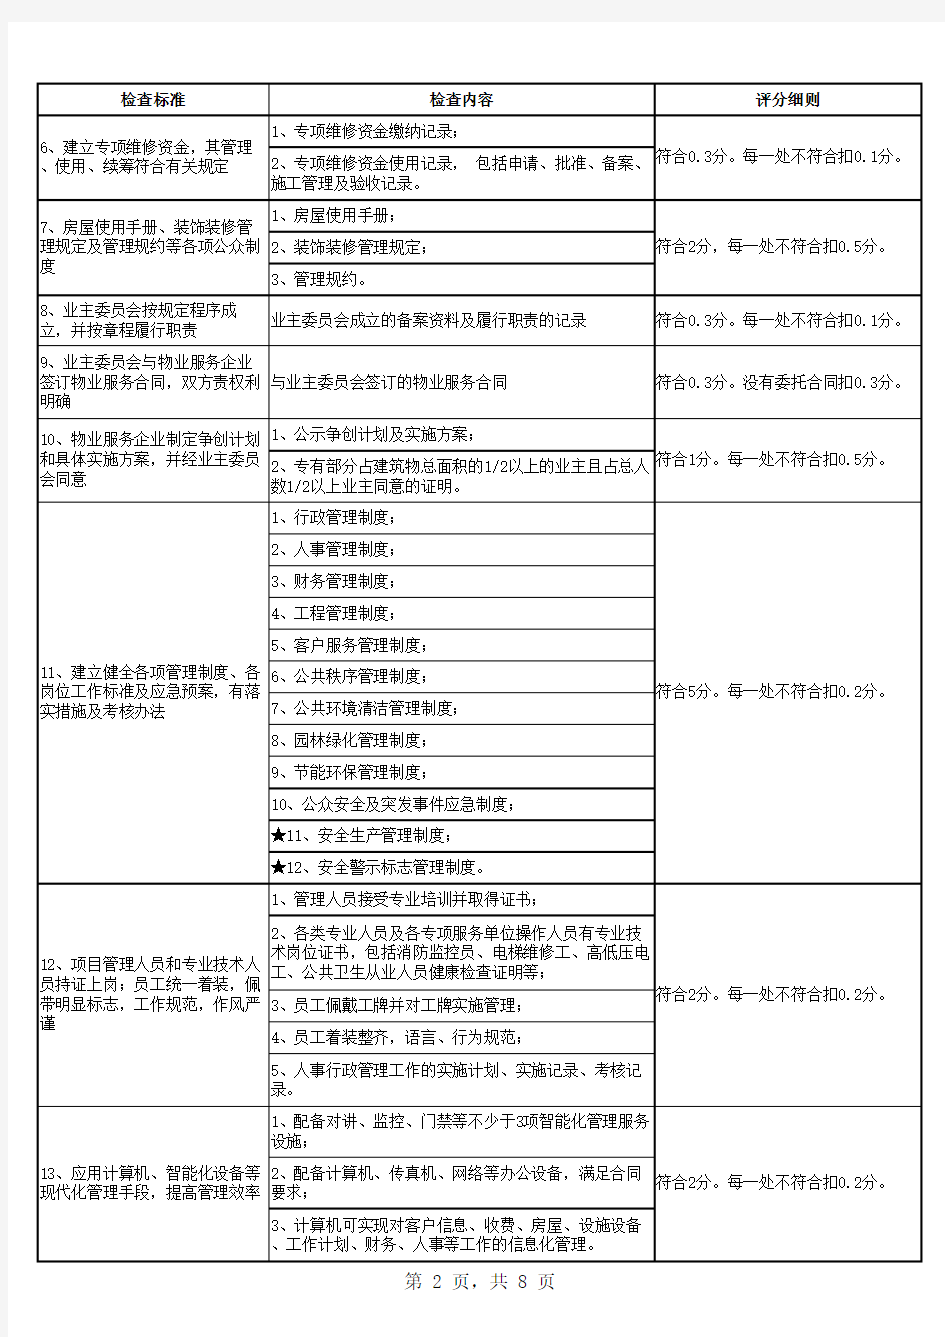 北京市物业管理示范项目考评标准及评分细则